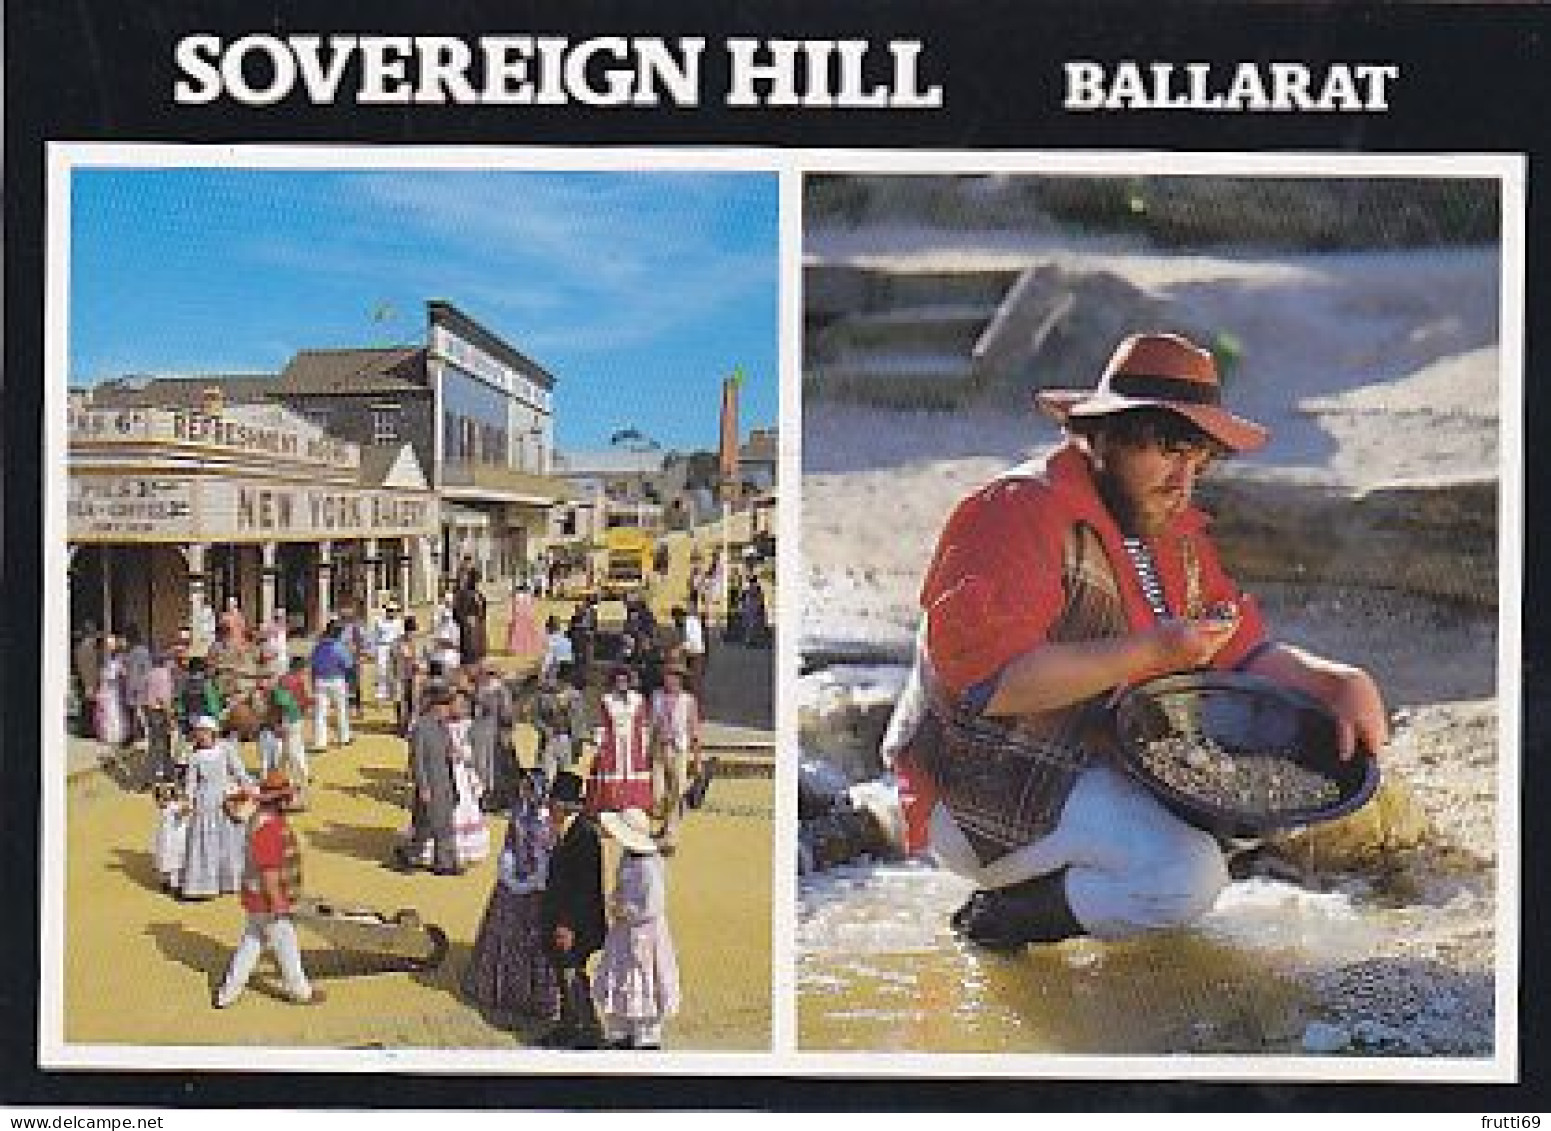 AK 175972 AUSTRALIA - Victoria - Ballarat - Sovereign Hill - Ballarat